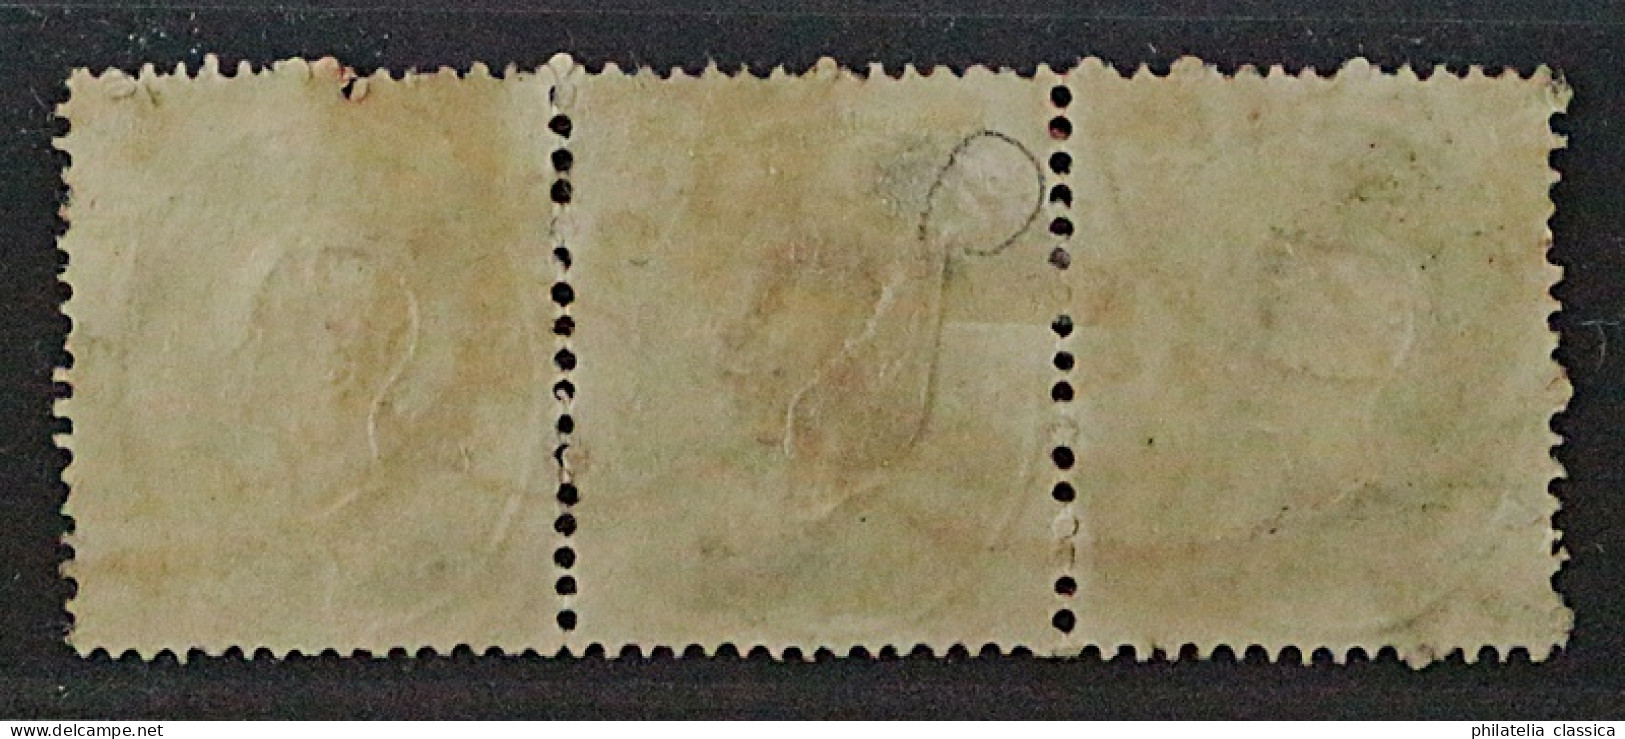 1861, ÖSTERREICH 19 DREIERSTREIFEN Stempel ROT + Schwarz, SELTEN, Geprüft 570,-€ - Gebraucht